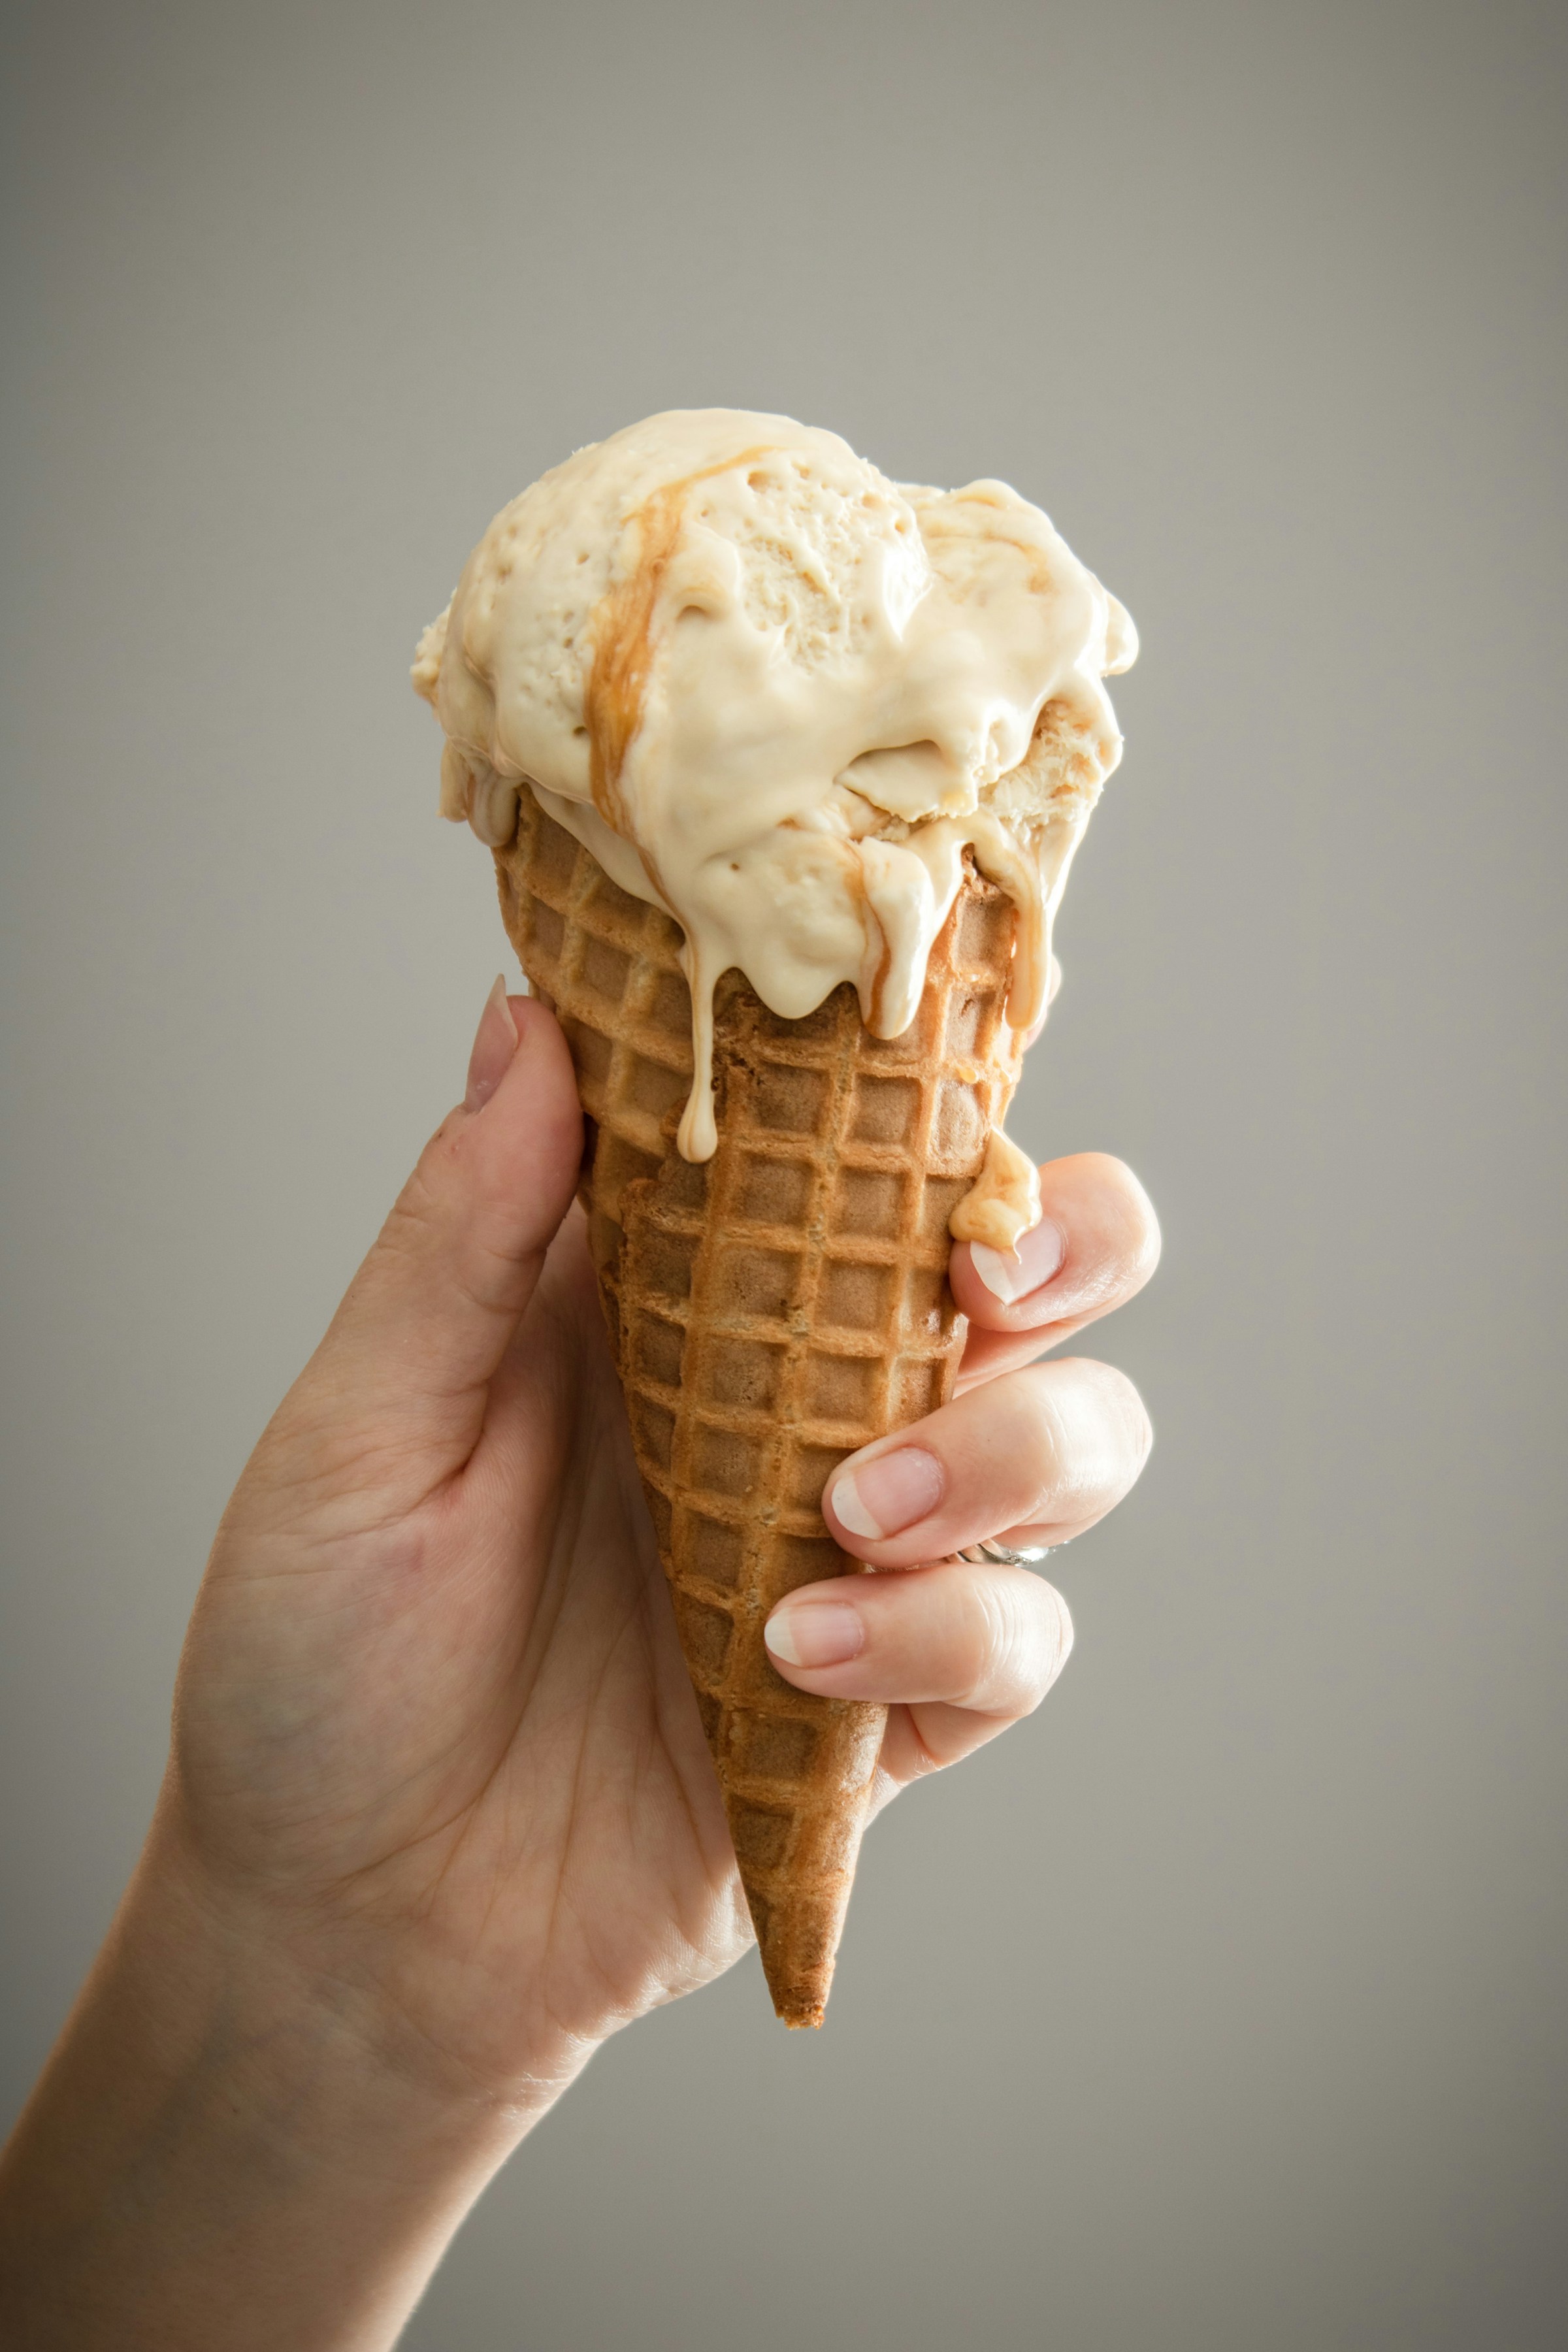 Una persona sujetando un cucurucho de helado | Fuente: Unsplash